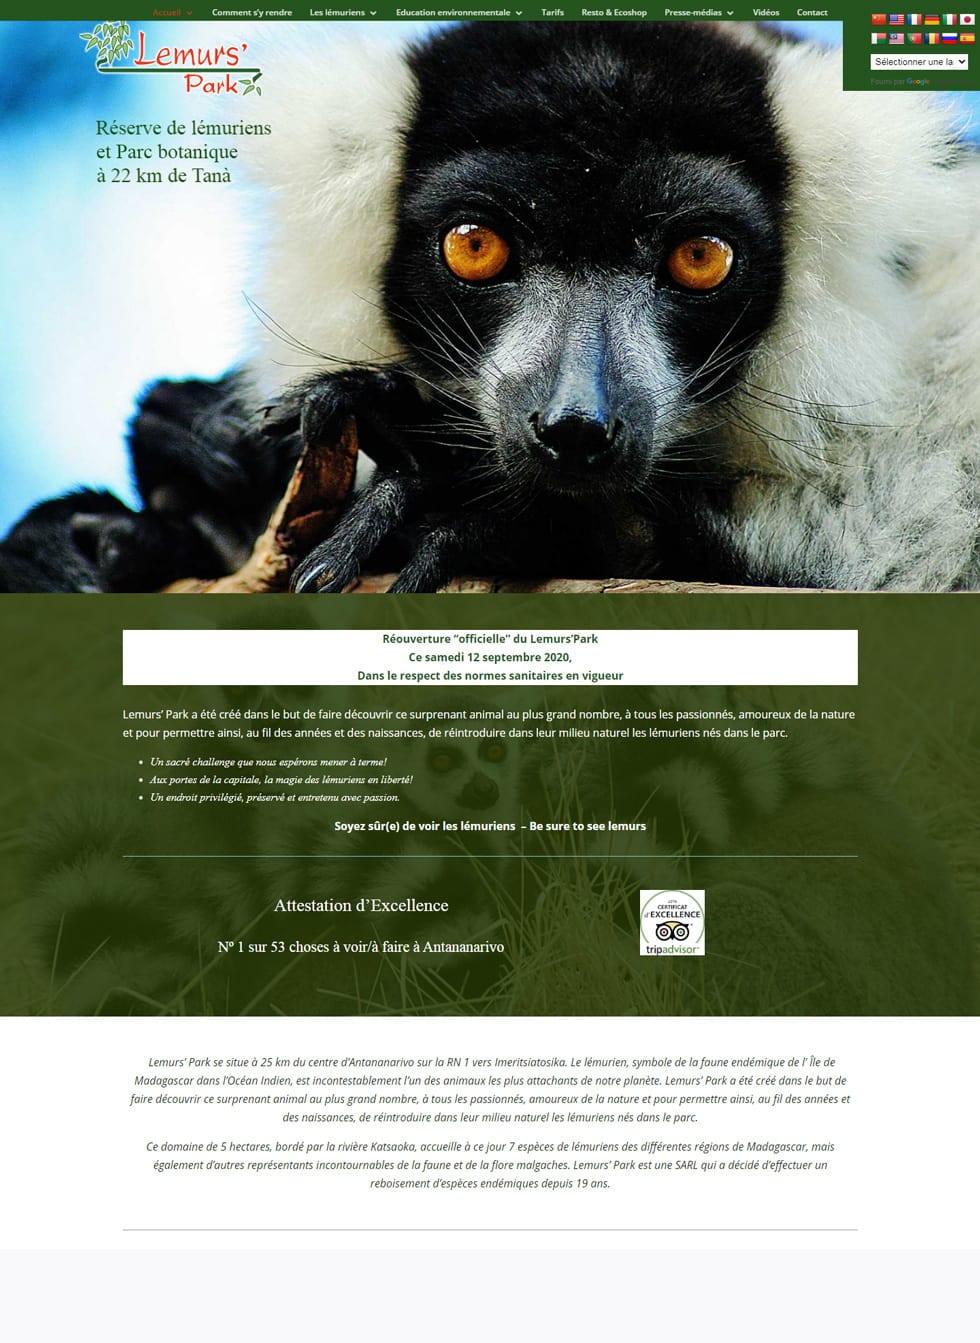 lemurs_park_site-min